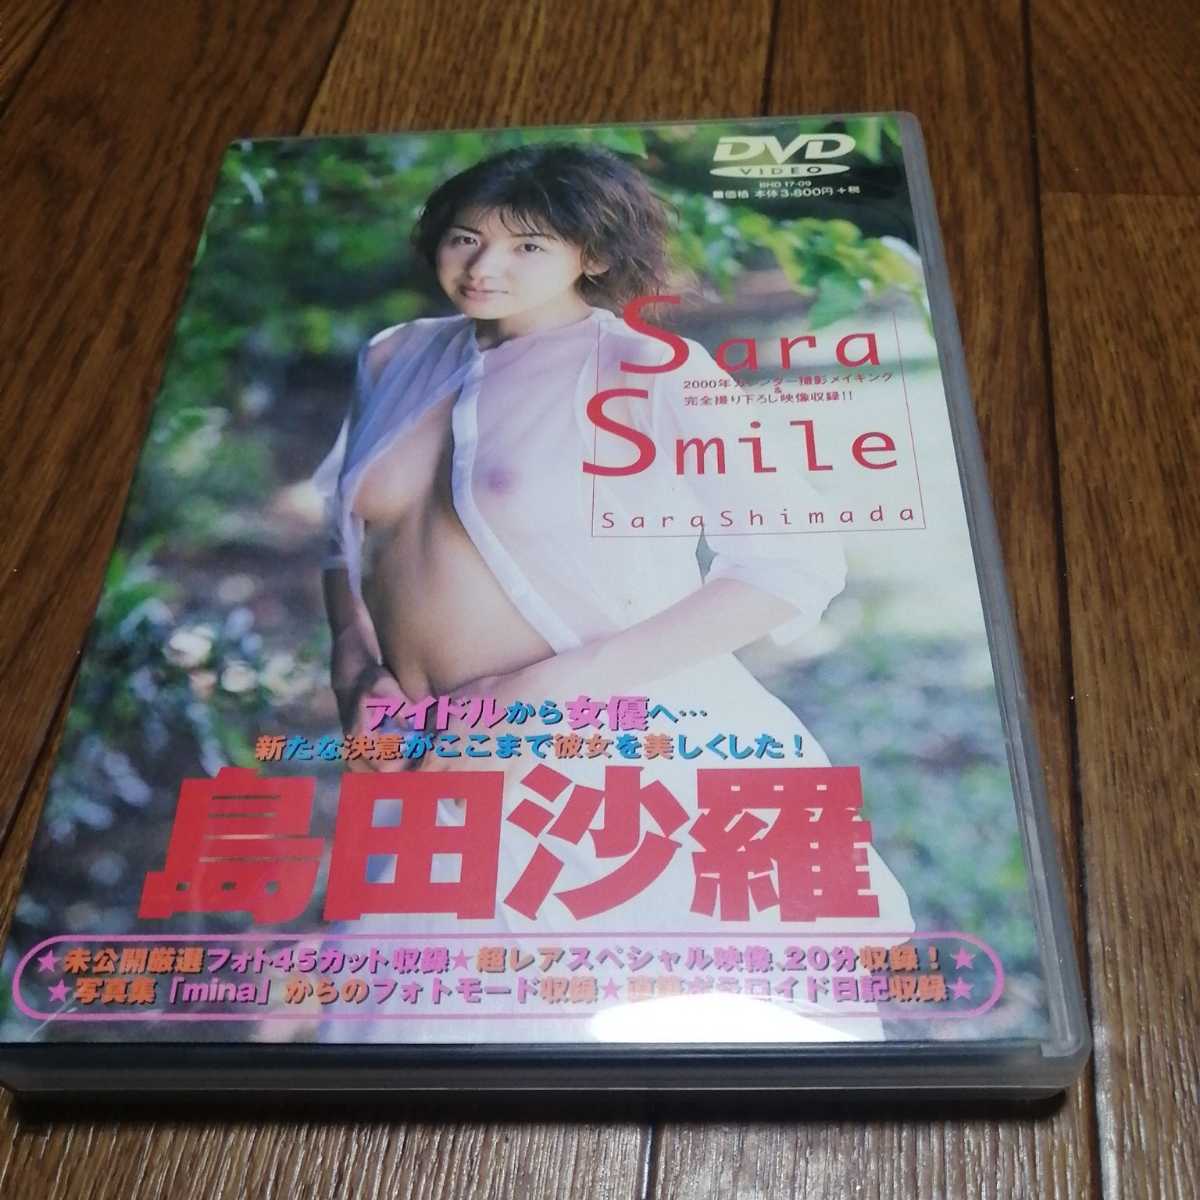 ★島田沙羅:Sara smile